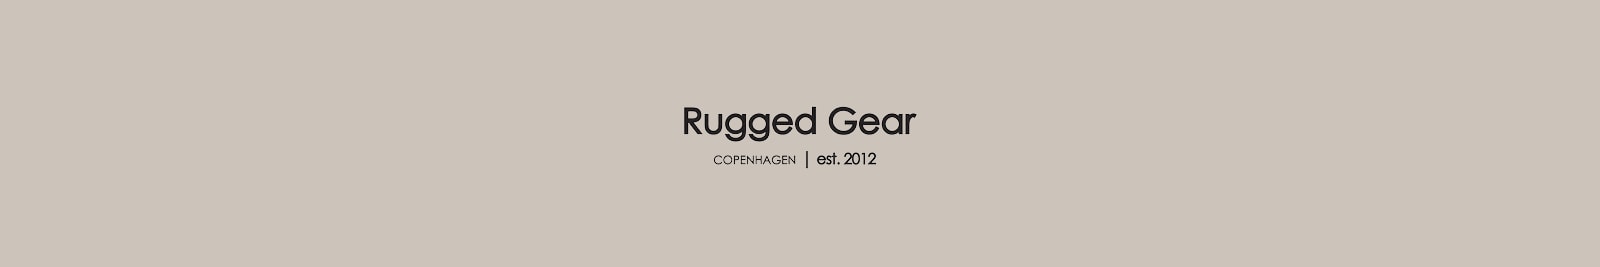 Rugged Gear